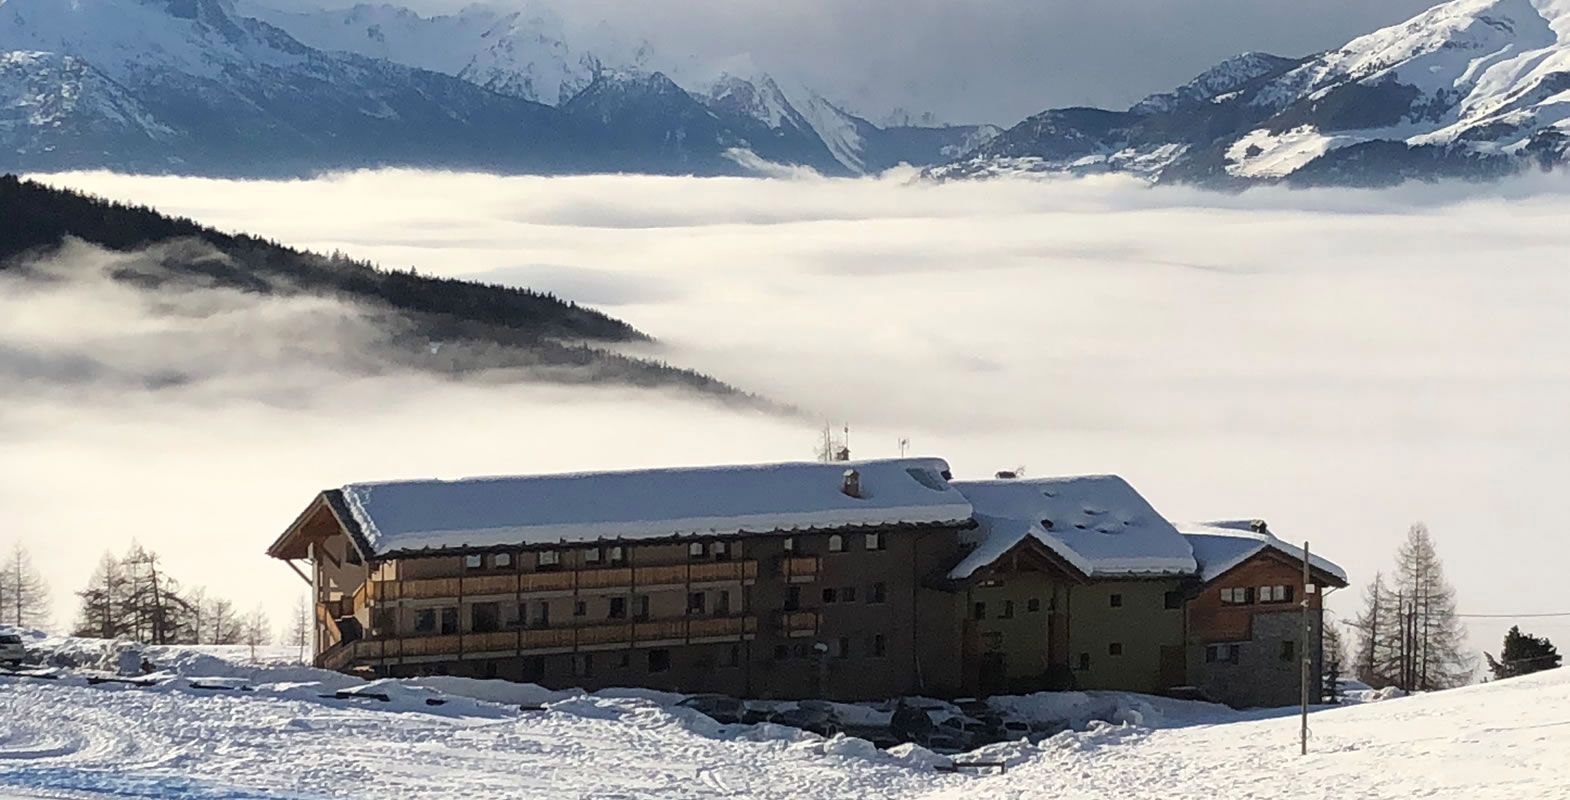 Aosta - Clouds